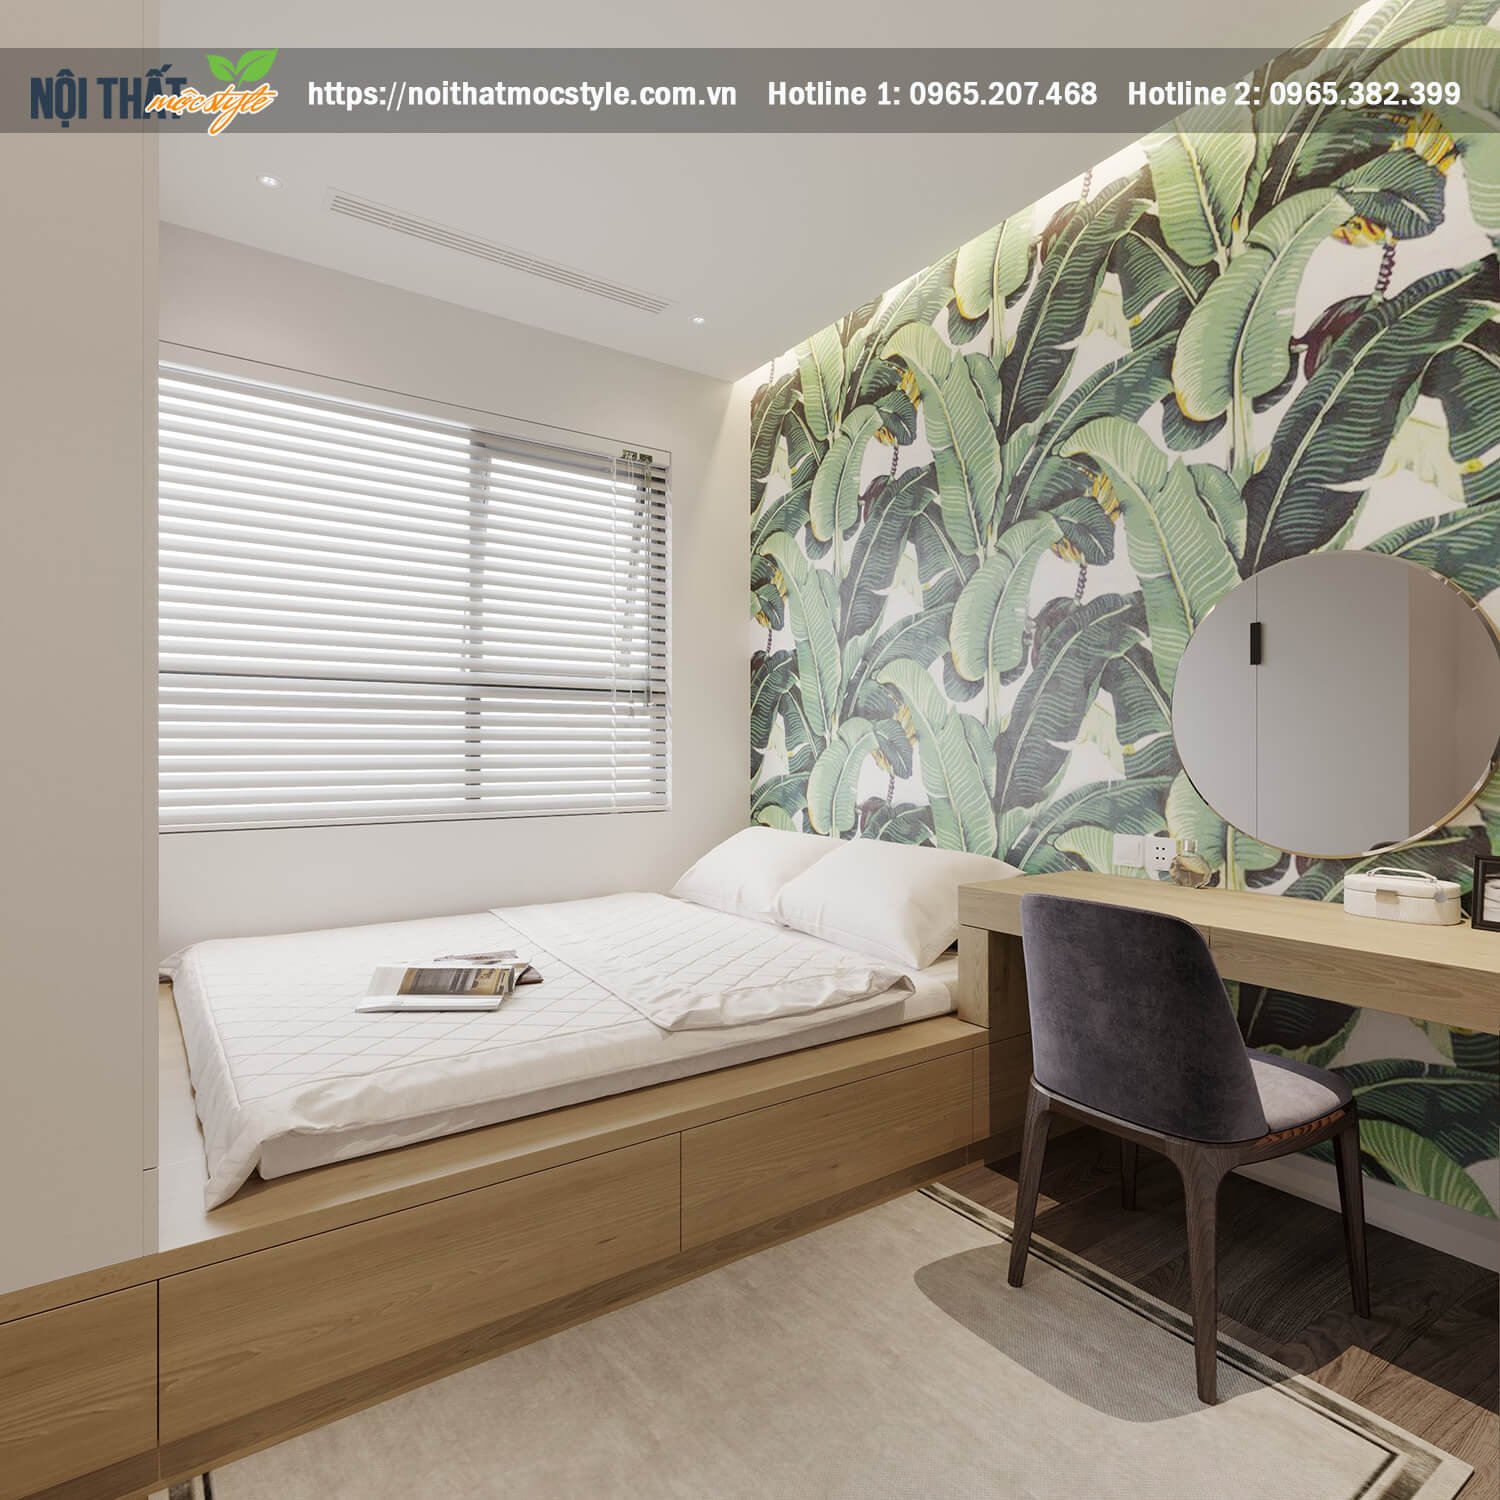 Thiết kế nội thất phòng ngủ mẫu 1 phong cách Tropical thanh bình. -